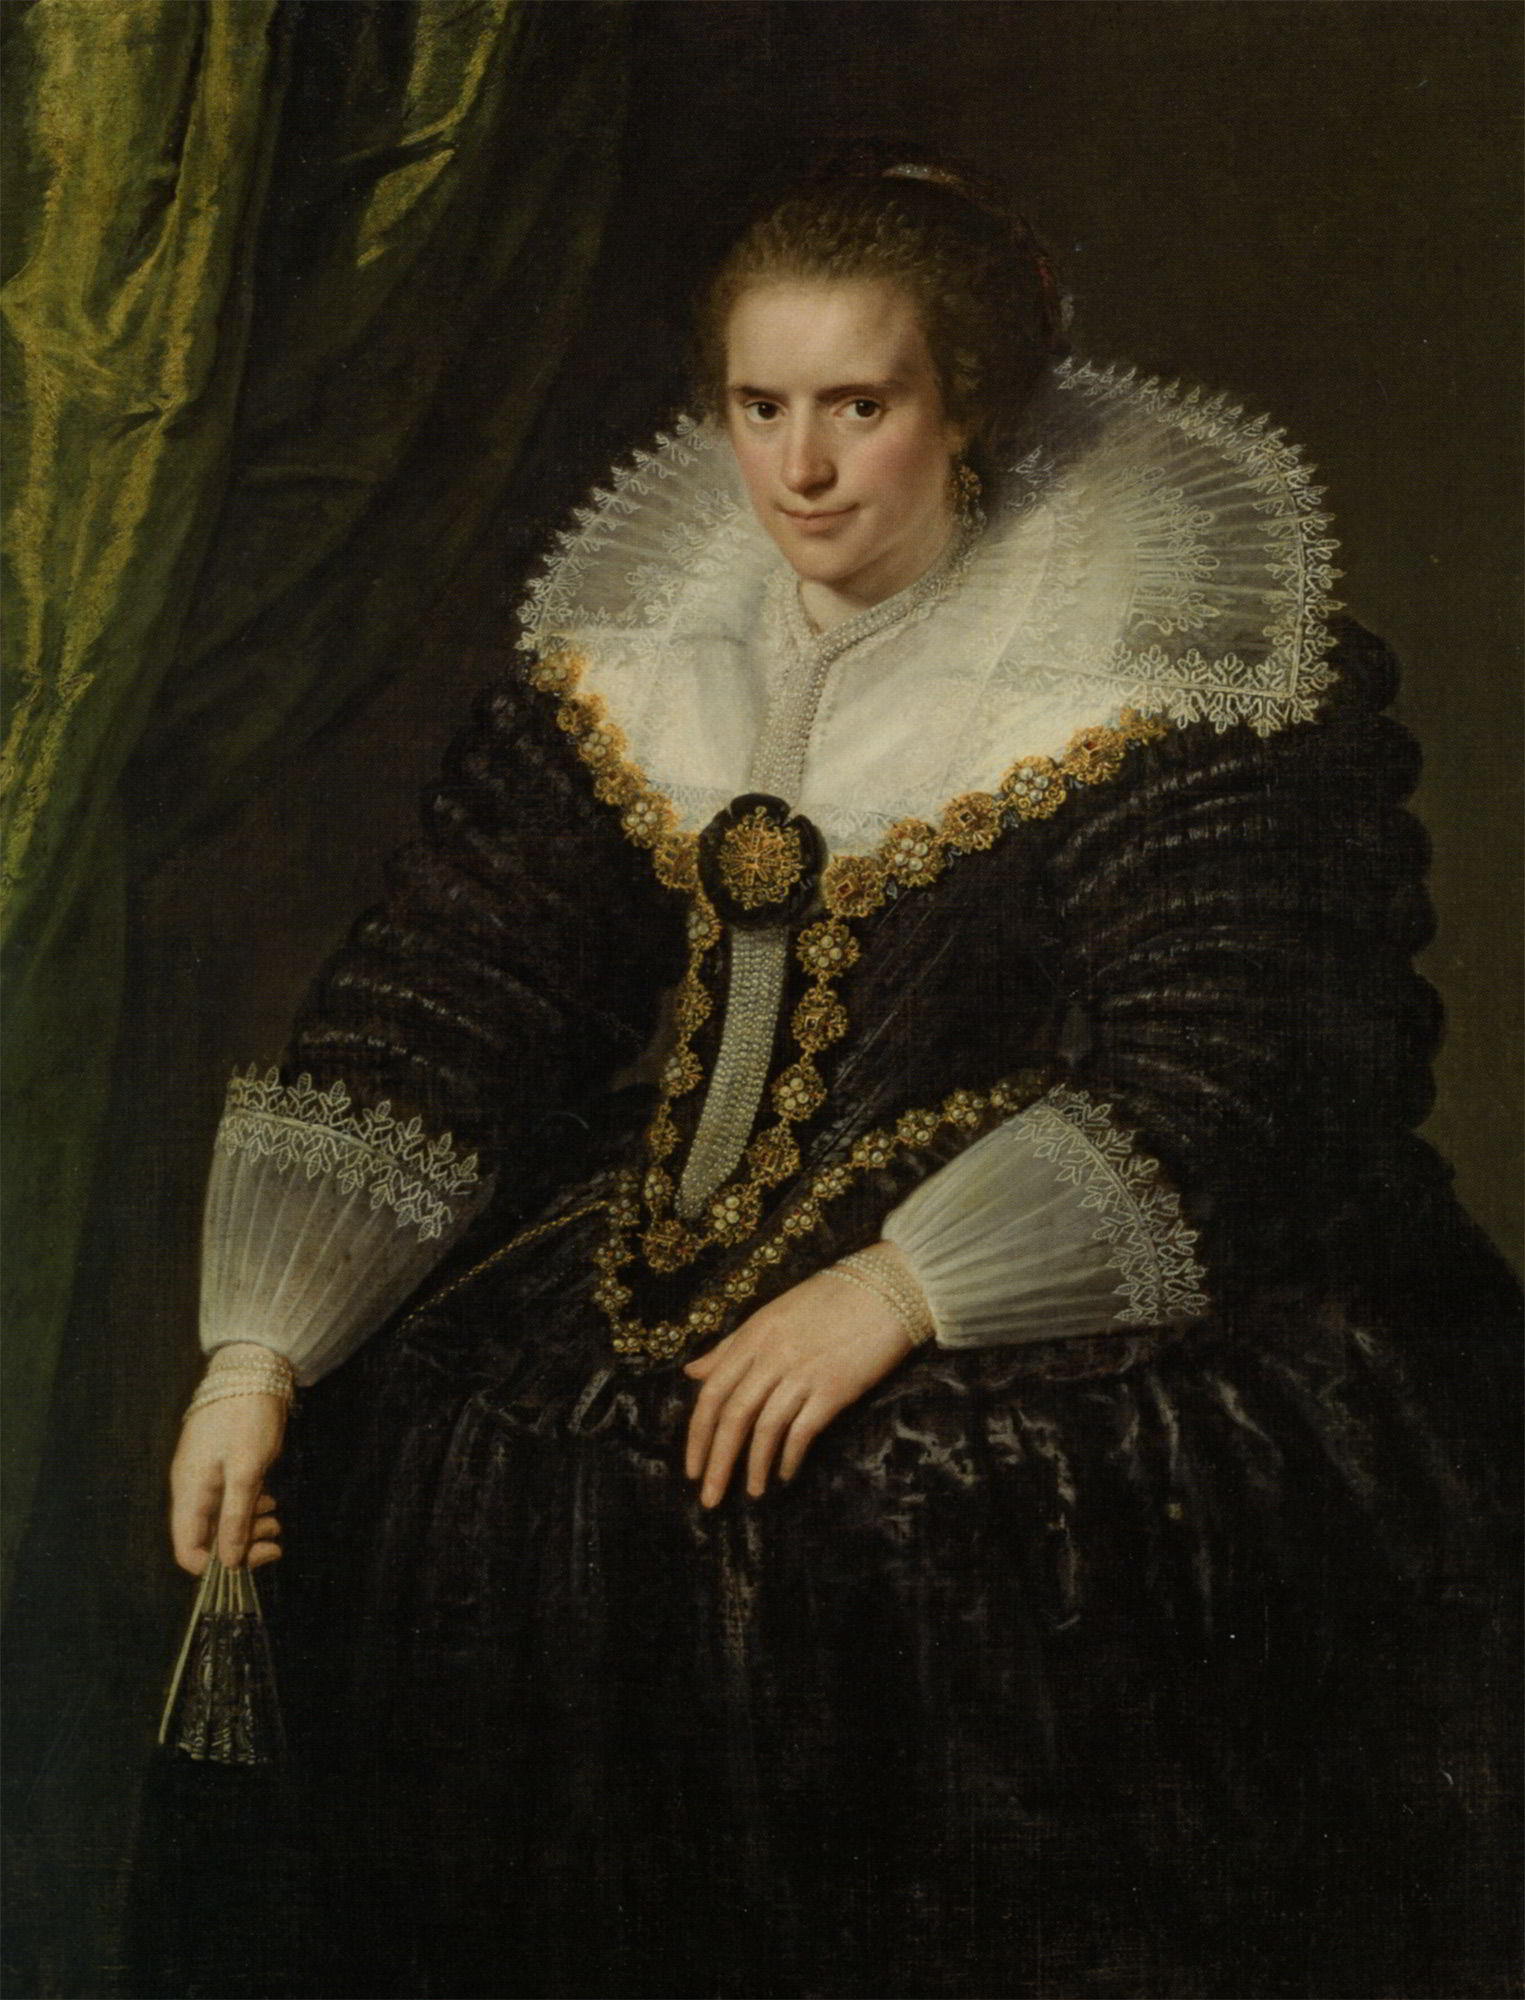 Portrait of a Noble Woman by Paulus Moreelse